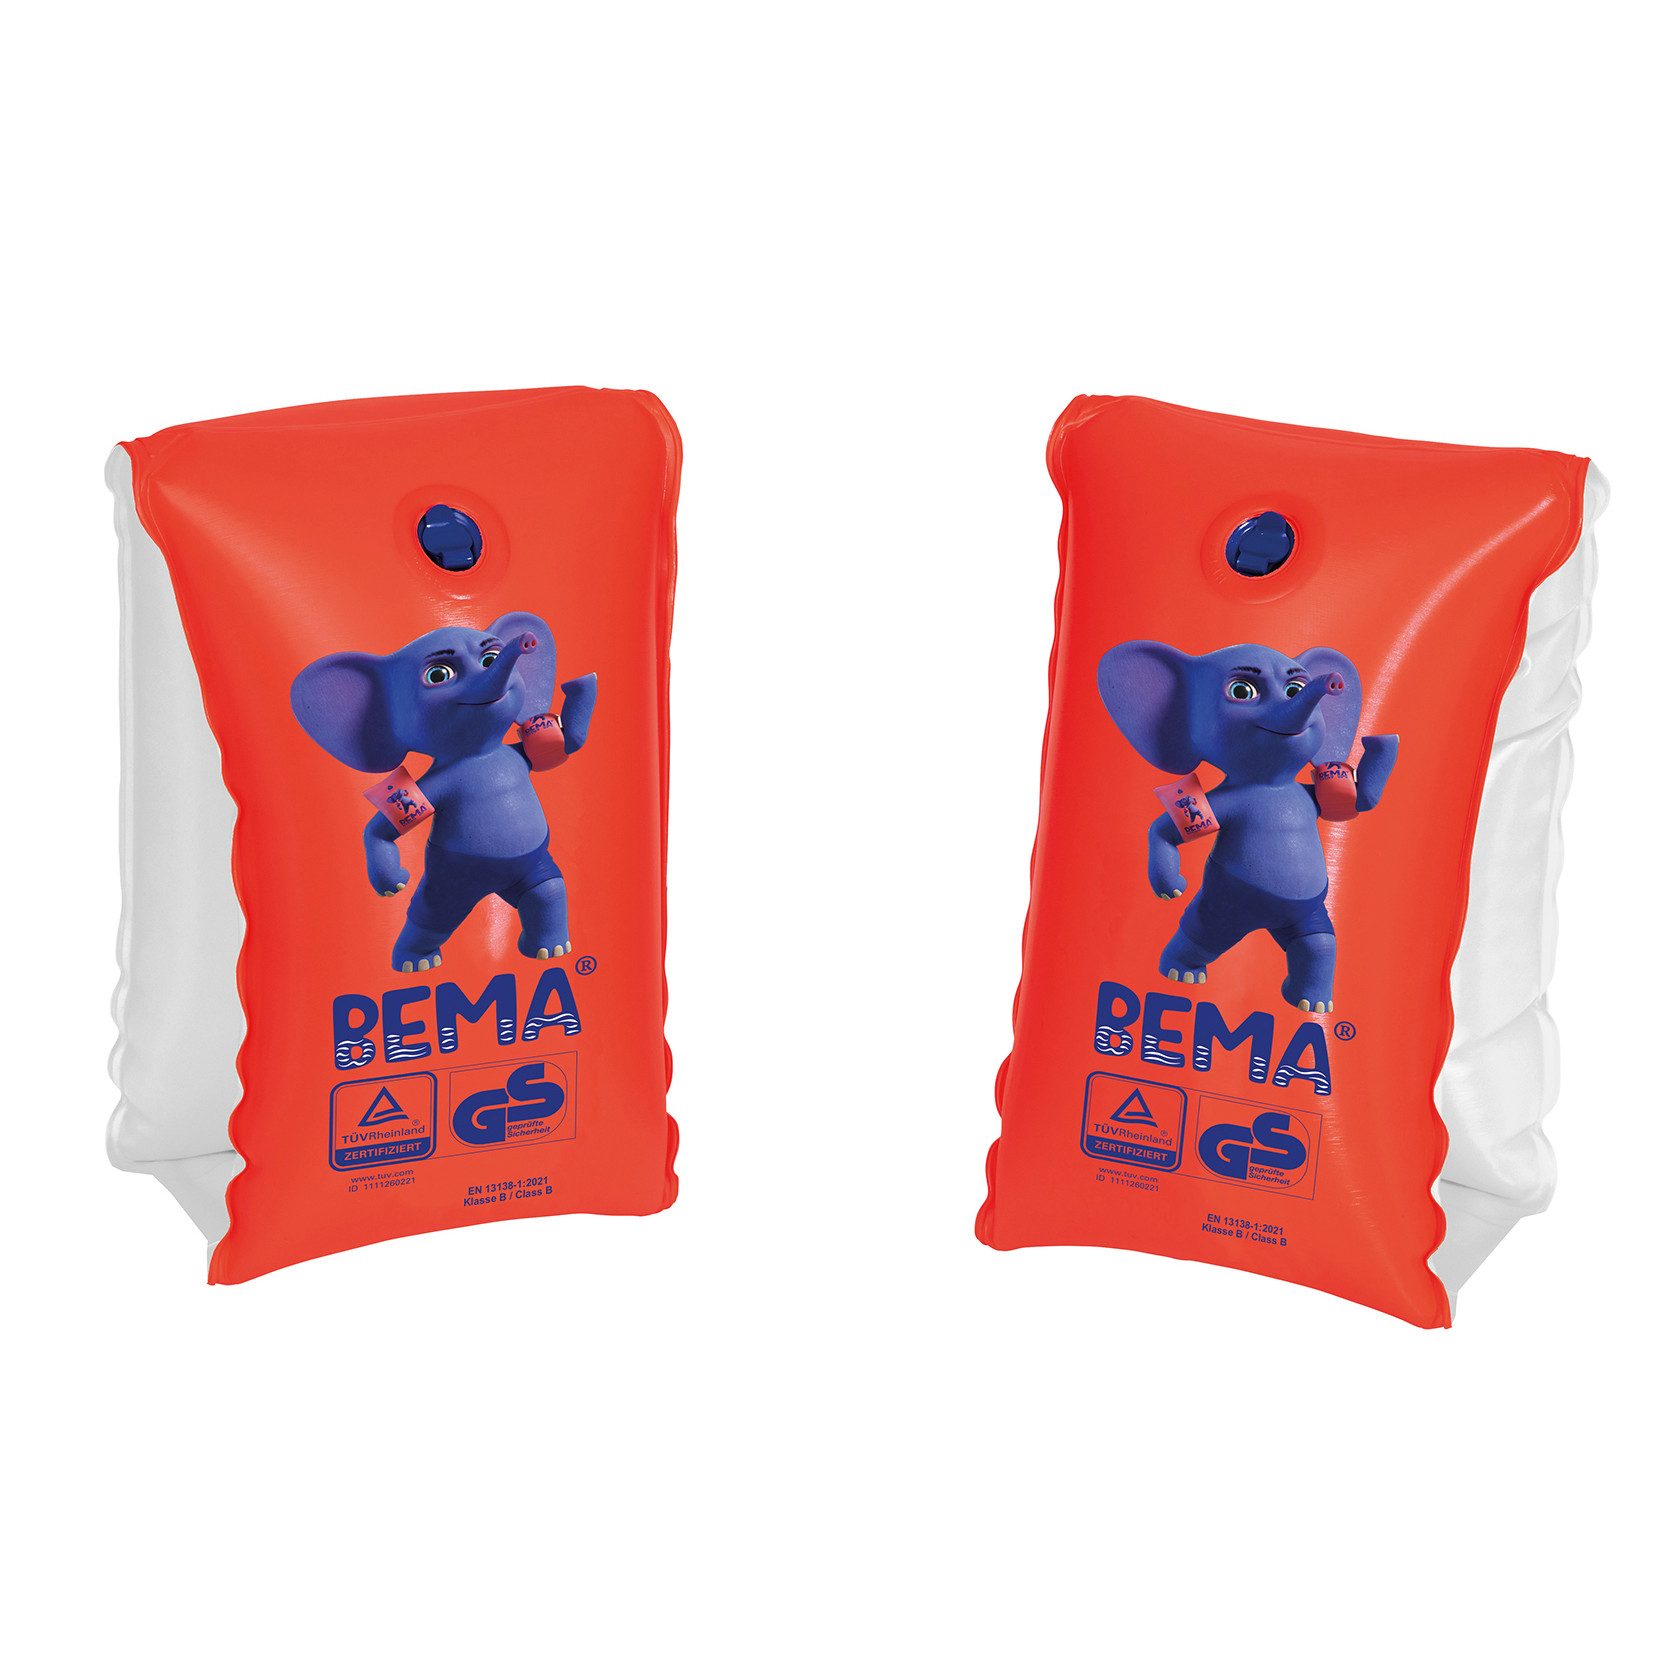 Happy People Schwimmhilfe BEMA® Schwimmflügel für Kinder von 0-1 Jahren, orange, Gr. 00